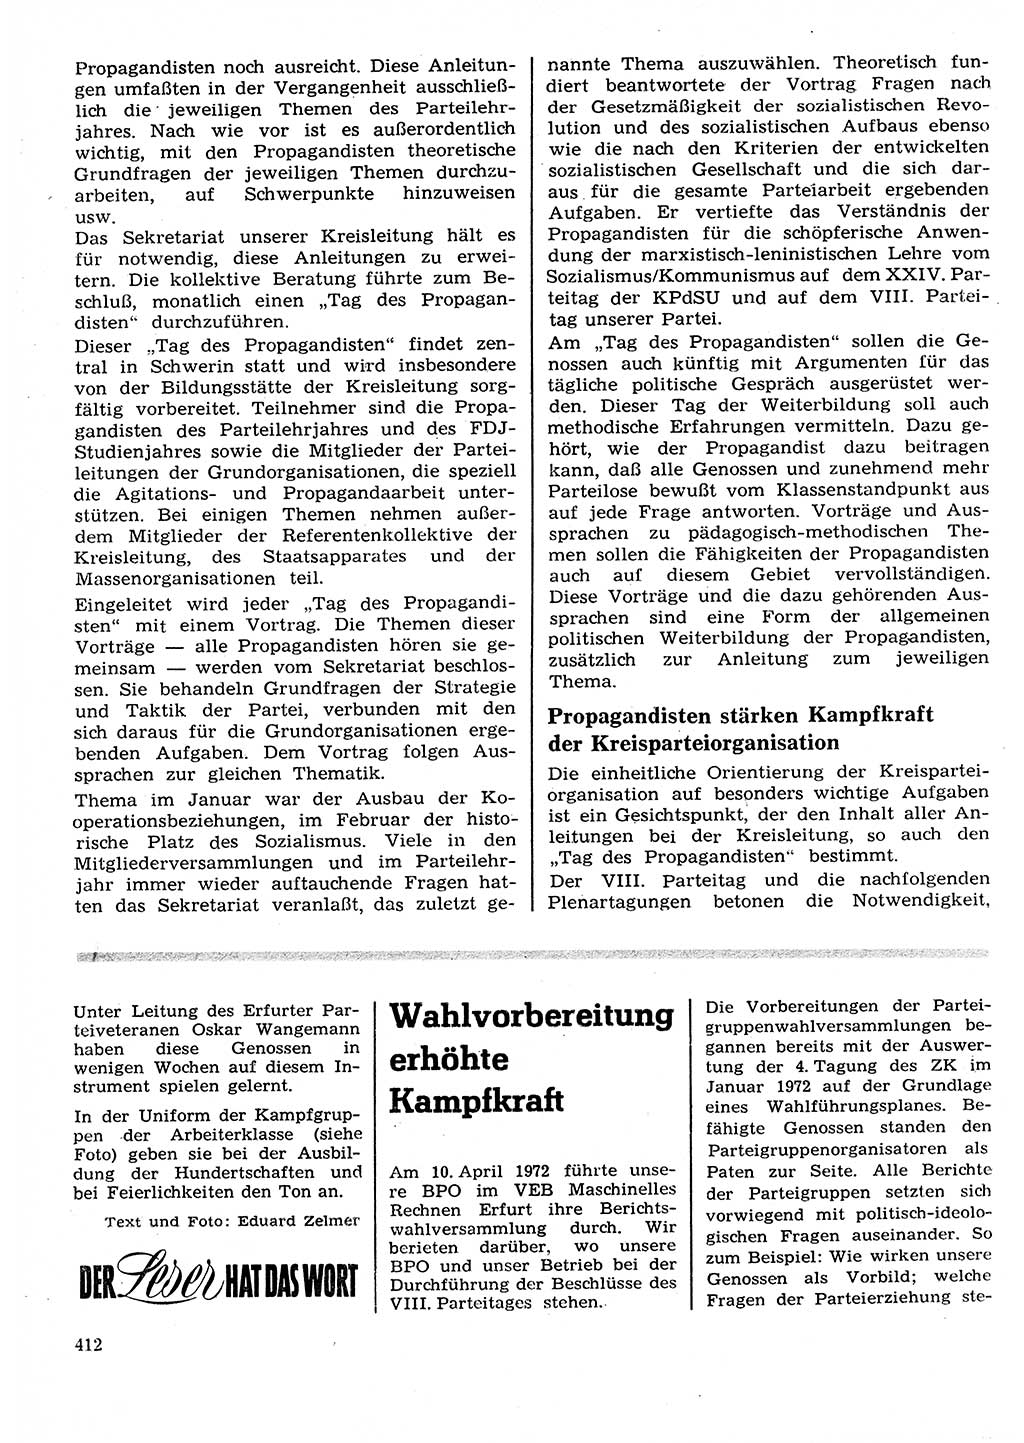 Neuer Weg (NW), Organ des Zentralkomitees (ZK) der SED (Sozialistische Einheitspartei Deutschlands) für Fragen des Parteilebens, 27. Jahrgang [Deutsche Demokratische Republik (DDR)] 1972, Seite 412 (NW ZK SED DDR 1972, S. 412)